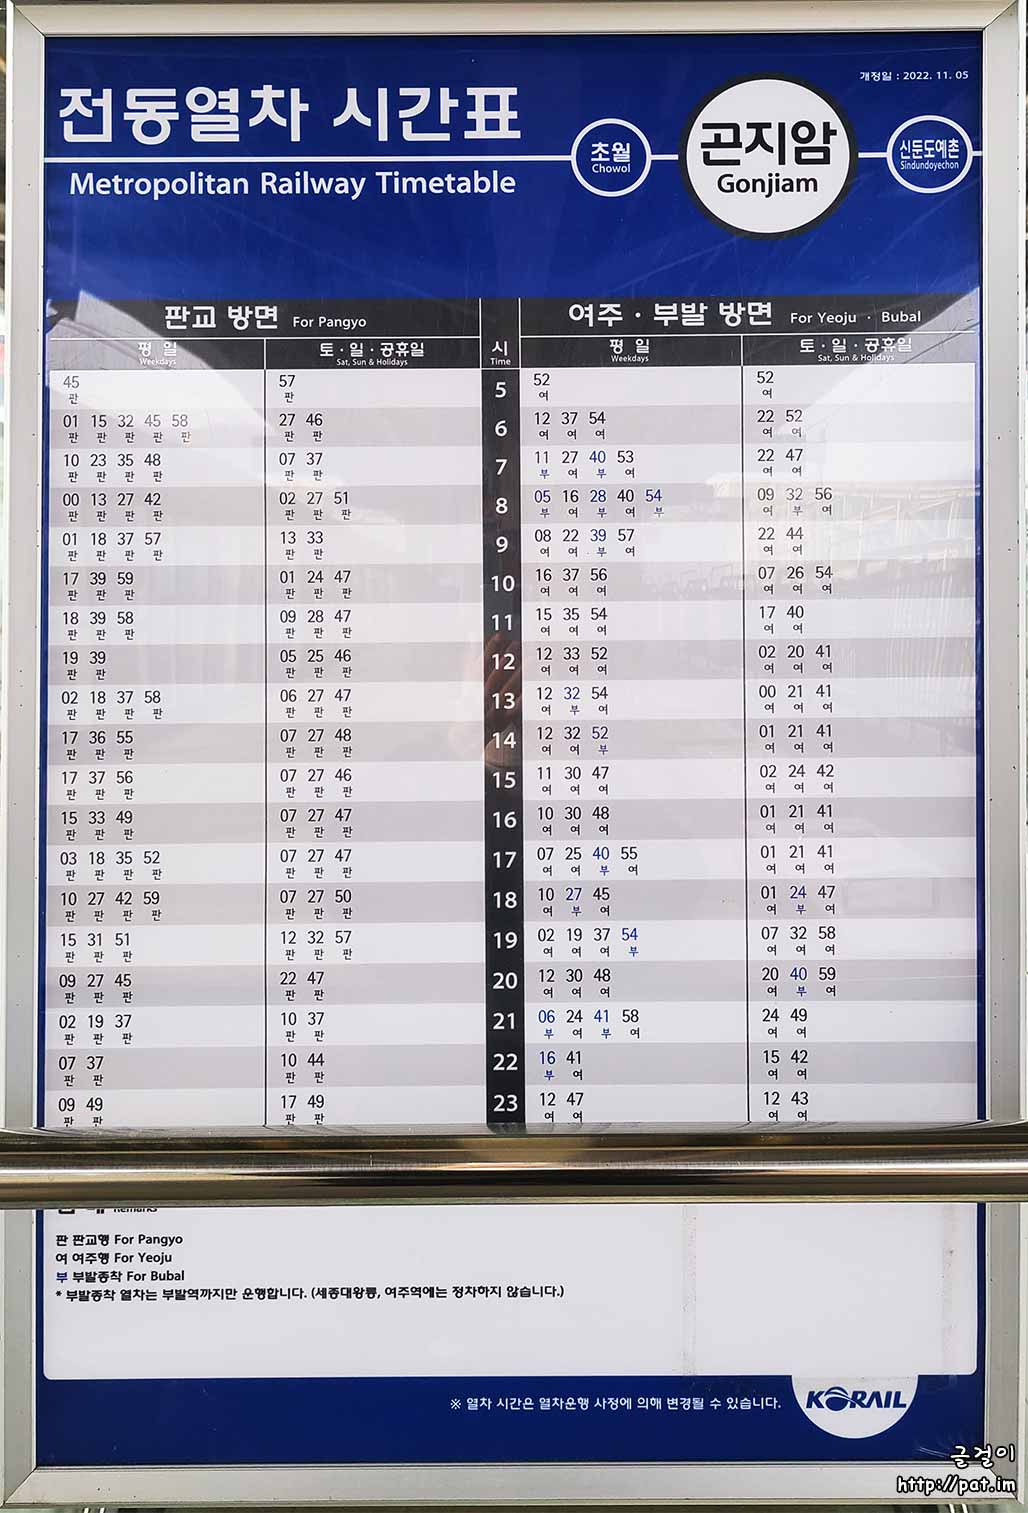 경강선 곤지암역 전동열차 시간표 (2022.11.5~) (판교 방면, 여주 · 부발 방면)